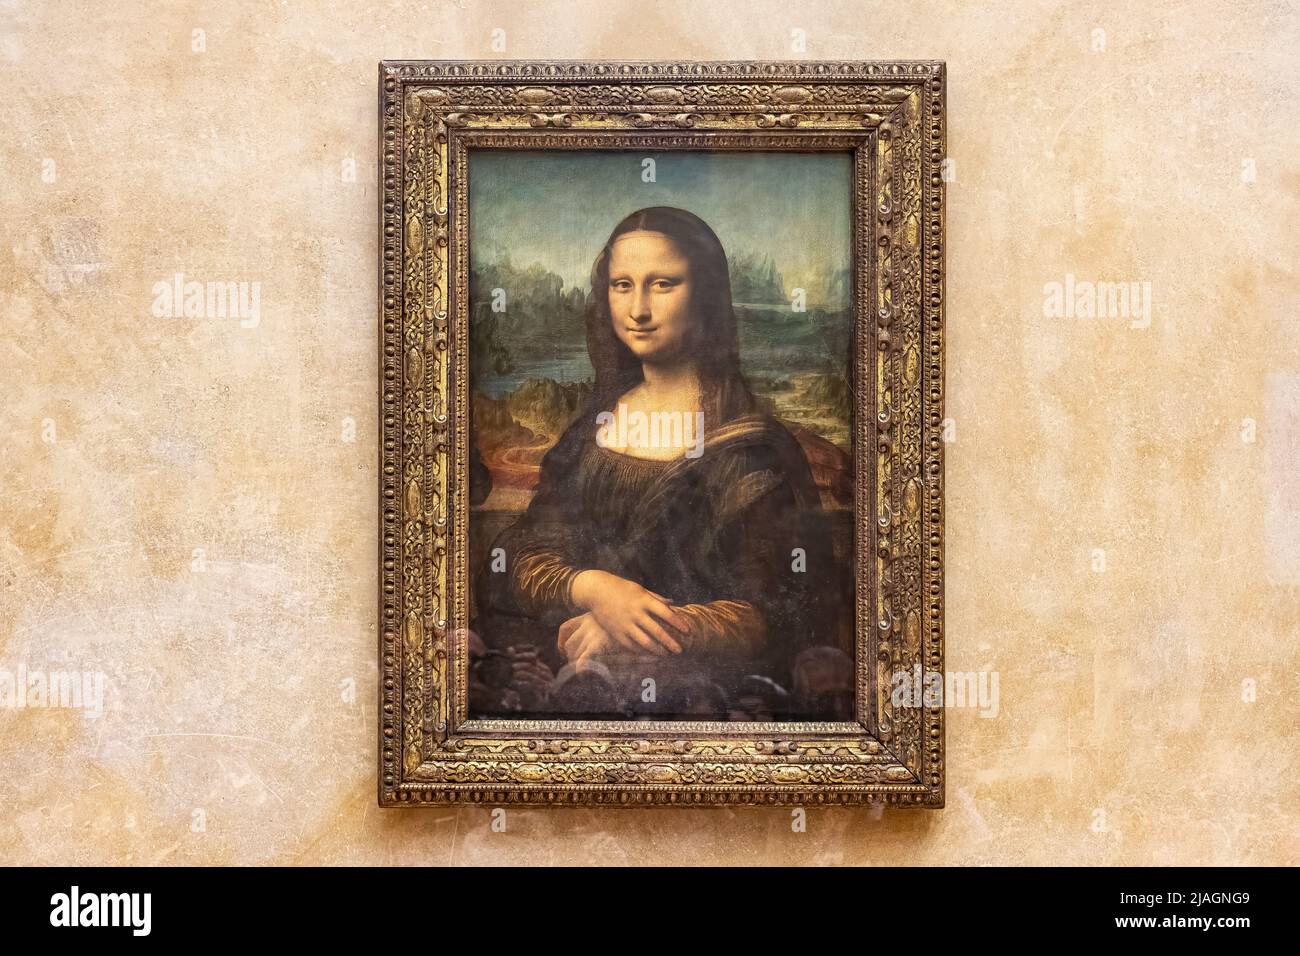 Paris, Frankreich - 18. März 2018: Mona Lisa, auch bekannt als La Gioconda oder La Joconde,16.-Jahrhundert-Porträt in Öl von Leonardo da Vinci in Floren gemalt Stockfoto